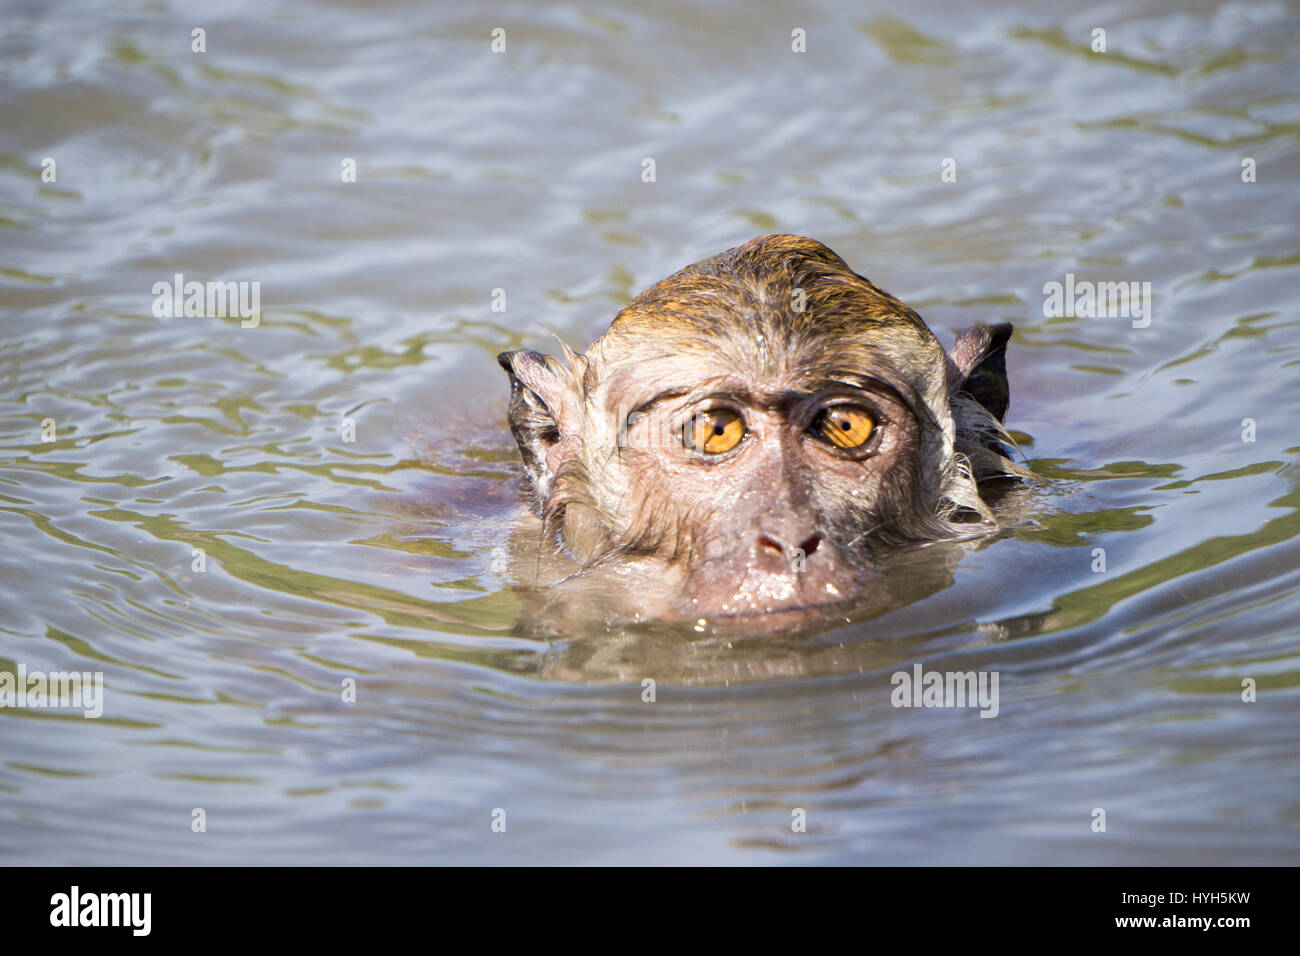 Close-up of a swimming monkey, Langkawi, Malaysia Stock Photo